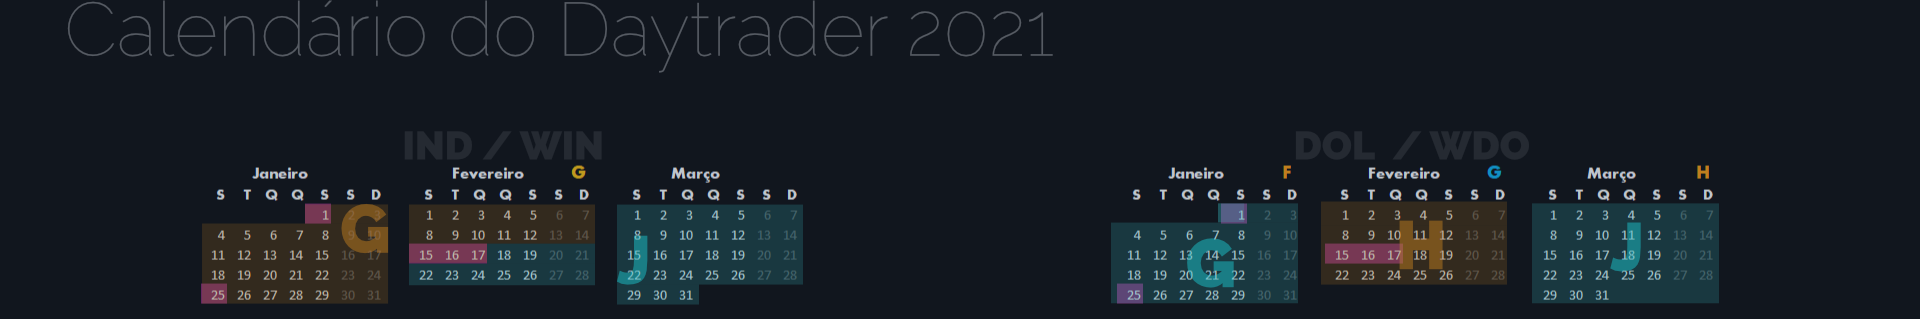 Calendário do Daytrader 2021